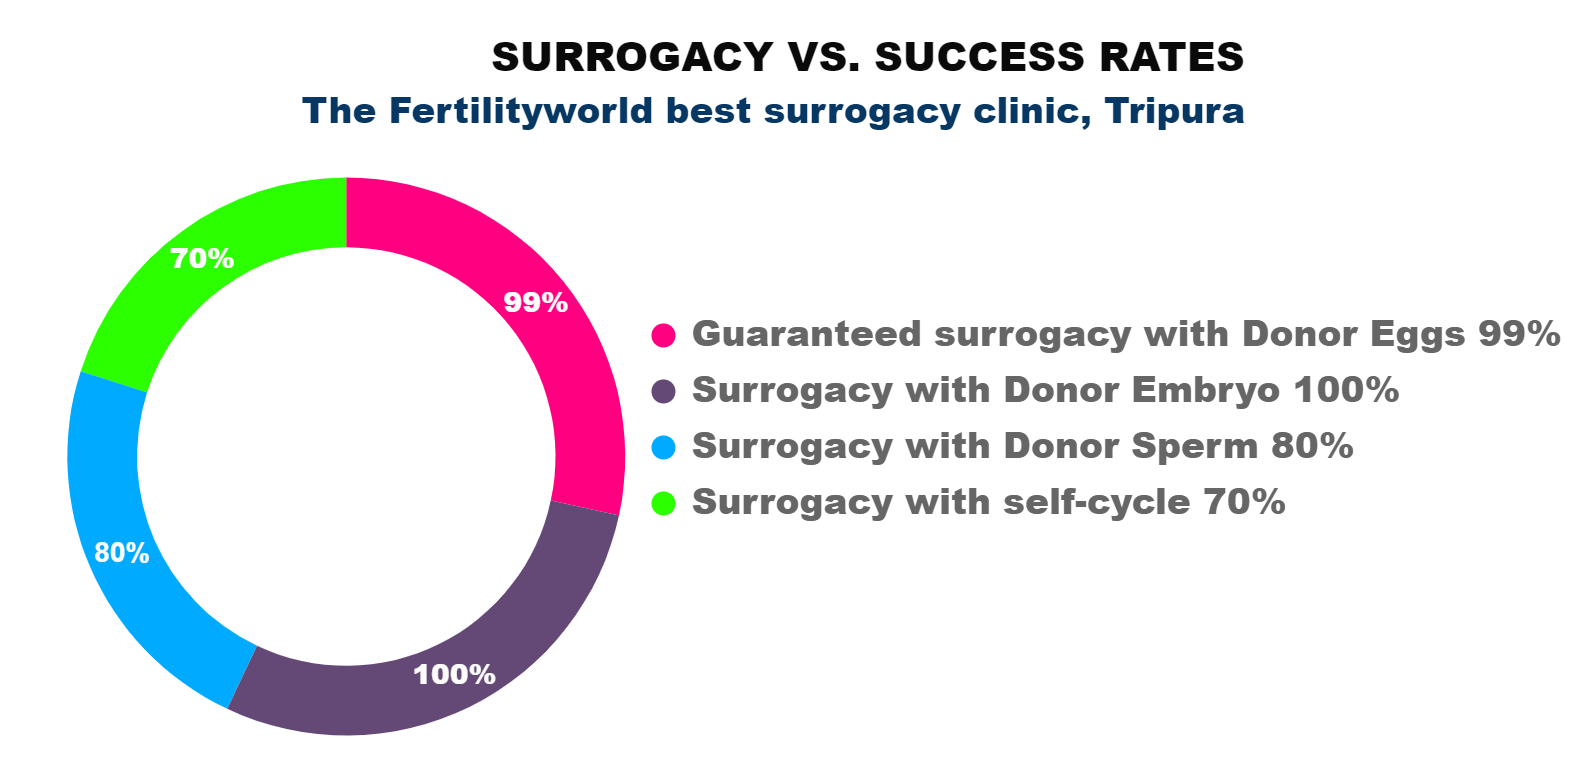 Surrogacy success rate in tripura india